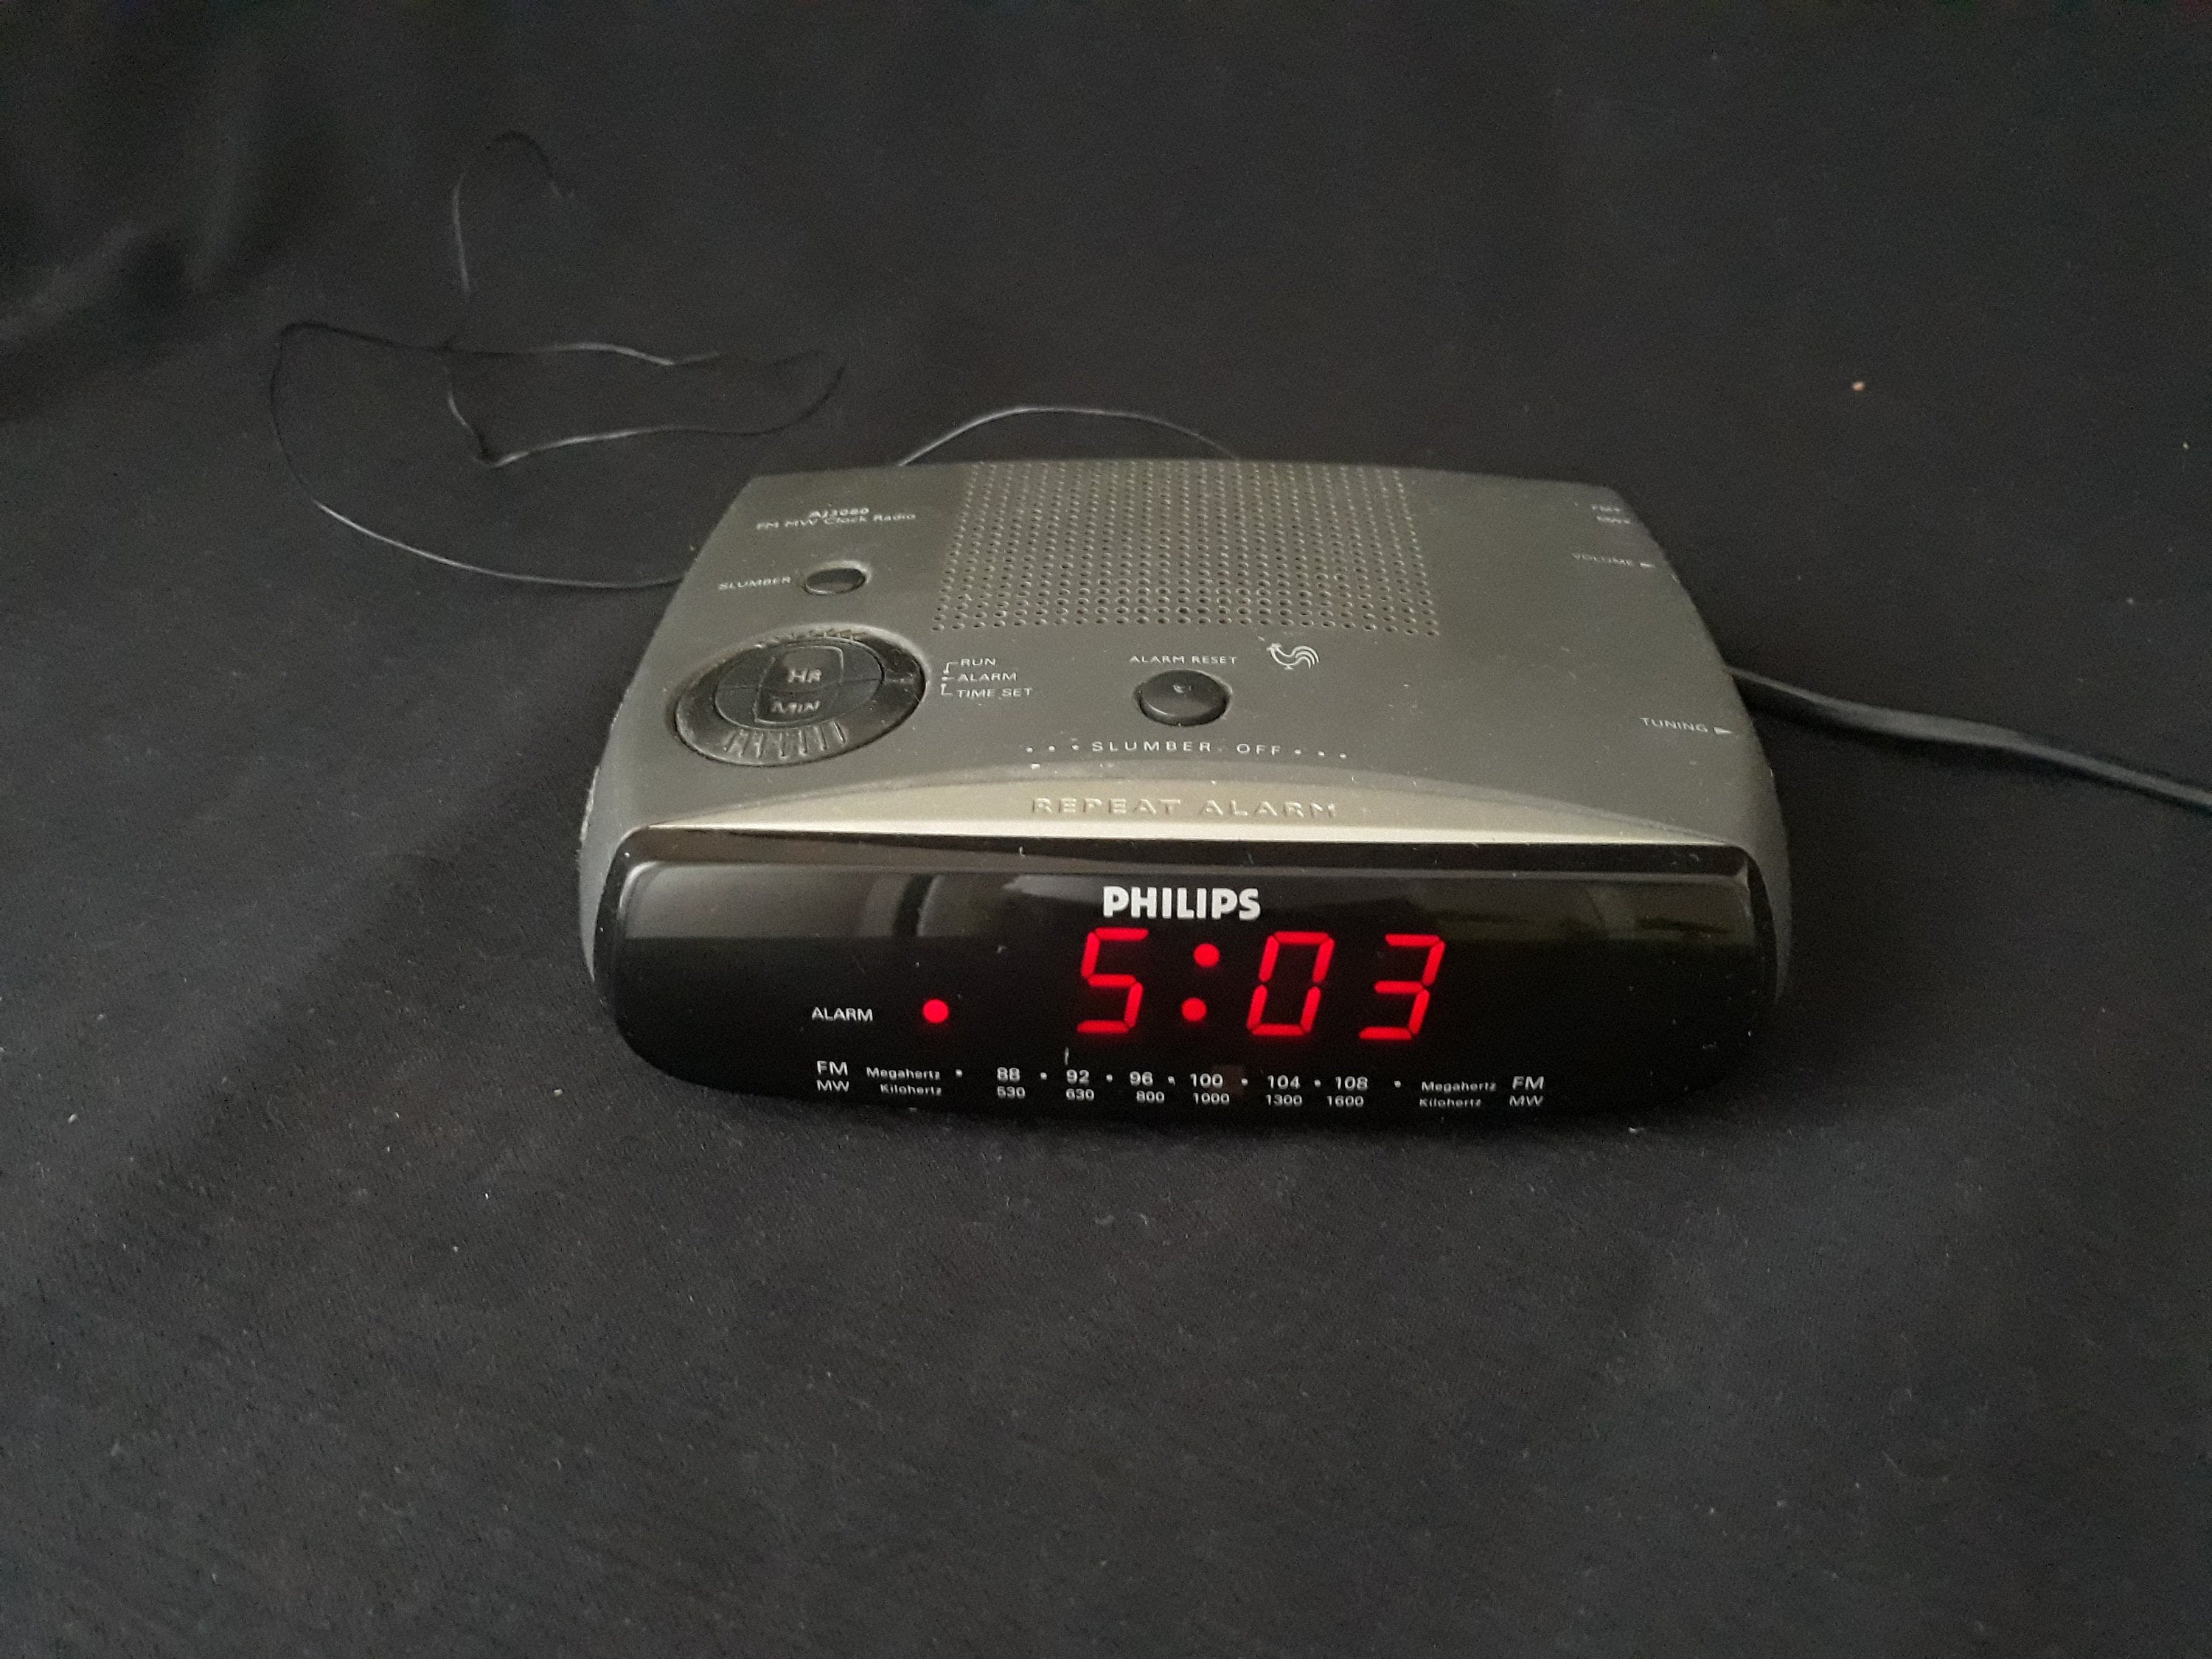 Vintage radio despertador de Philips, modelo D 3142. Fabricado en